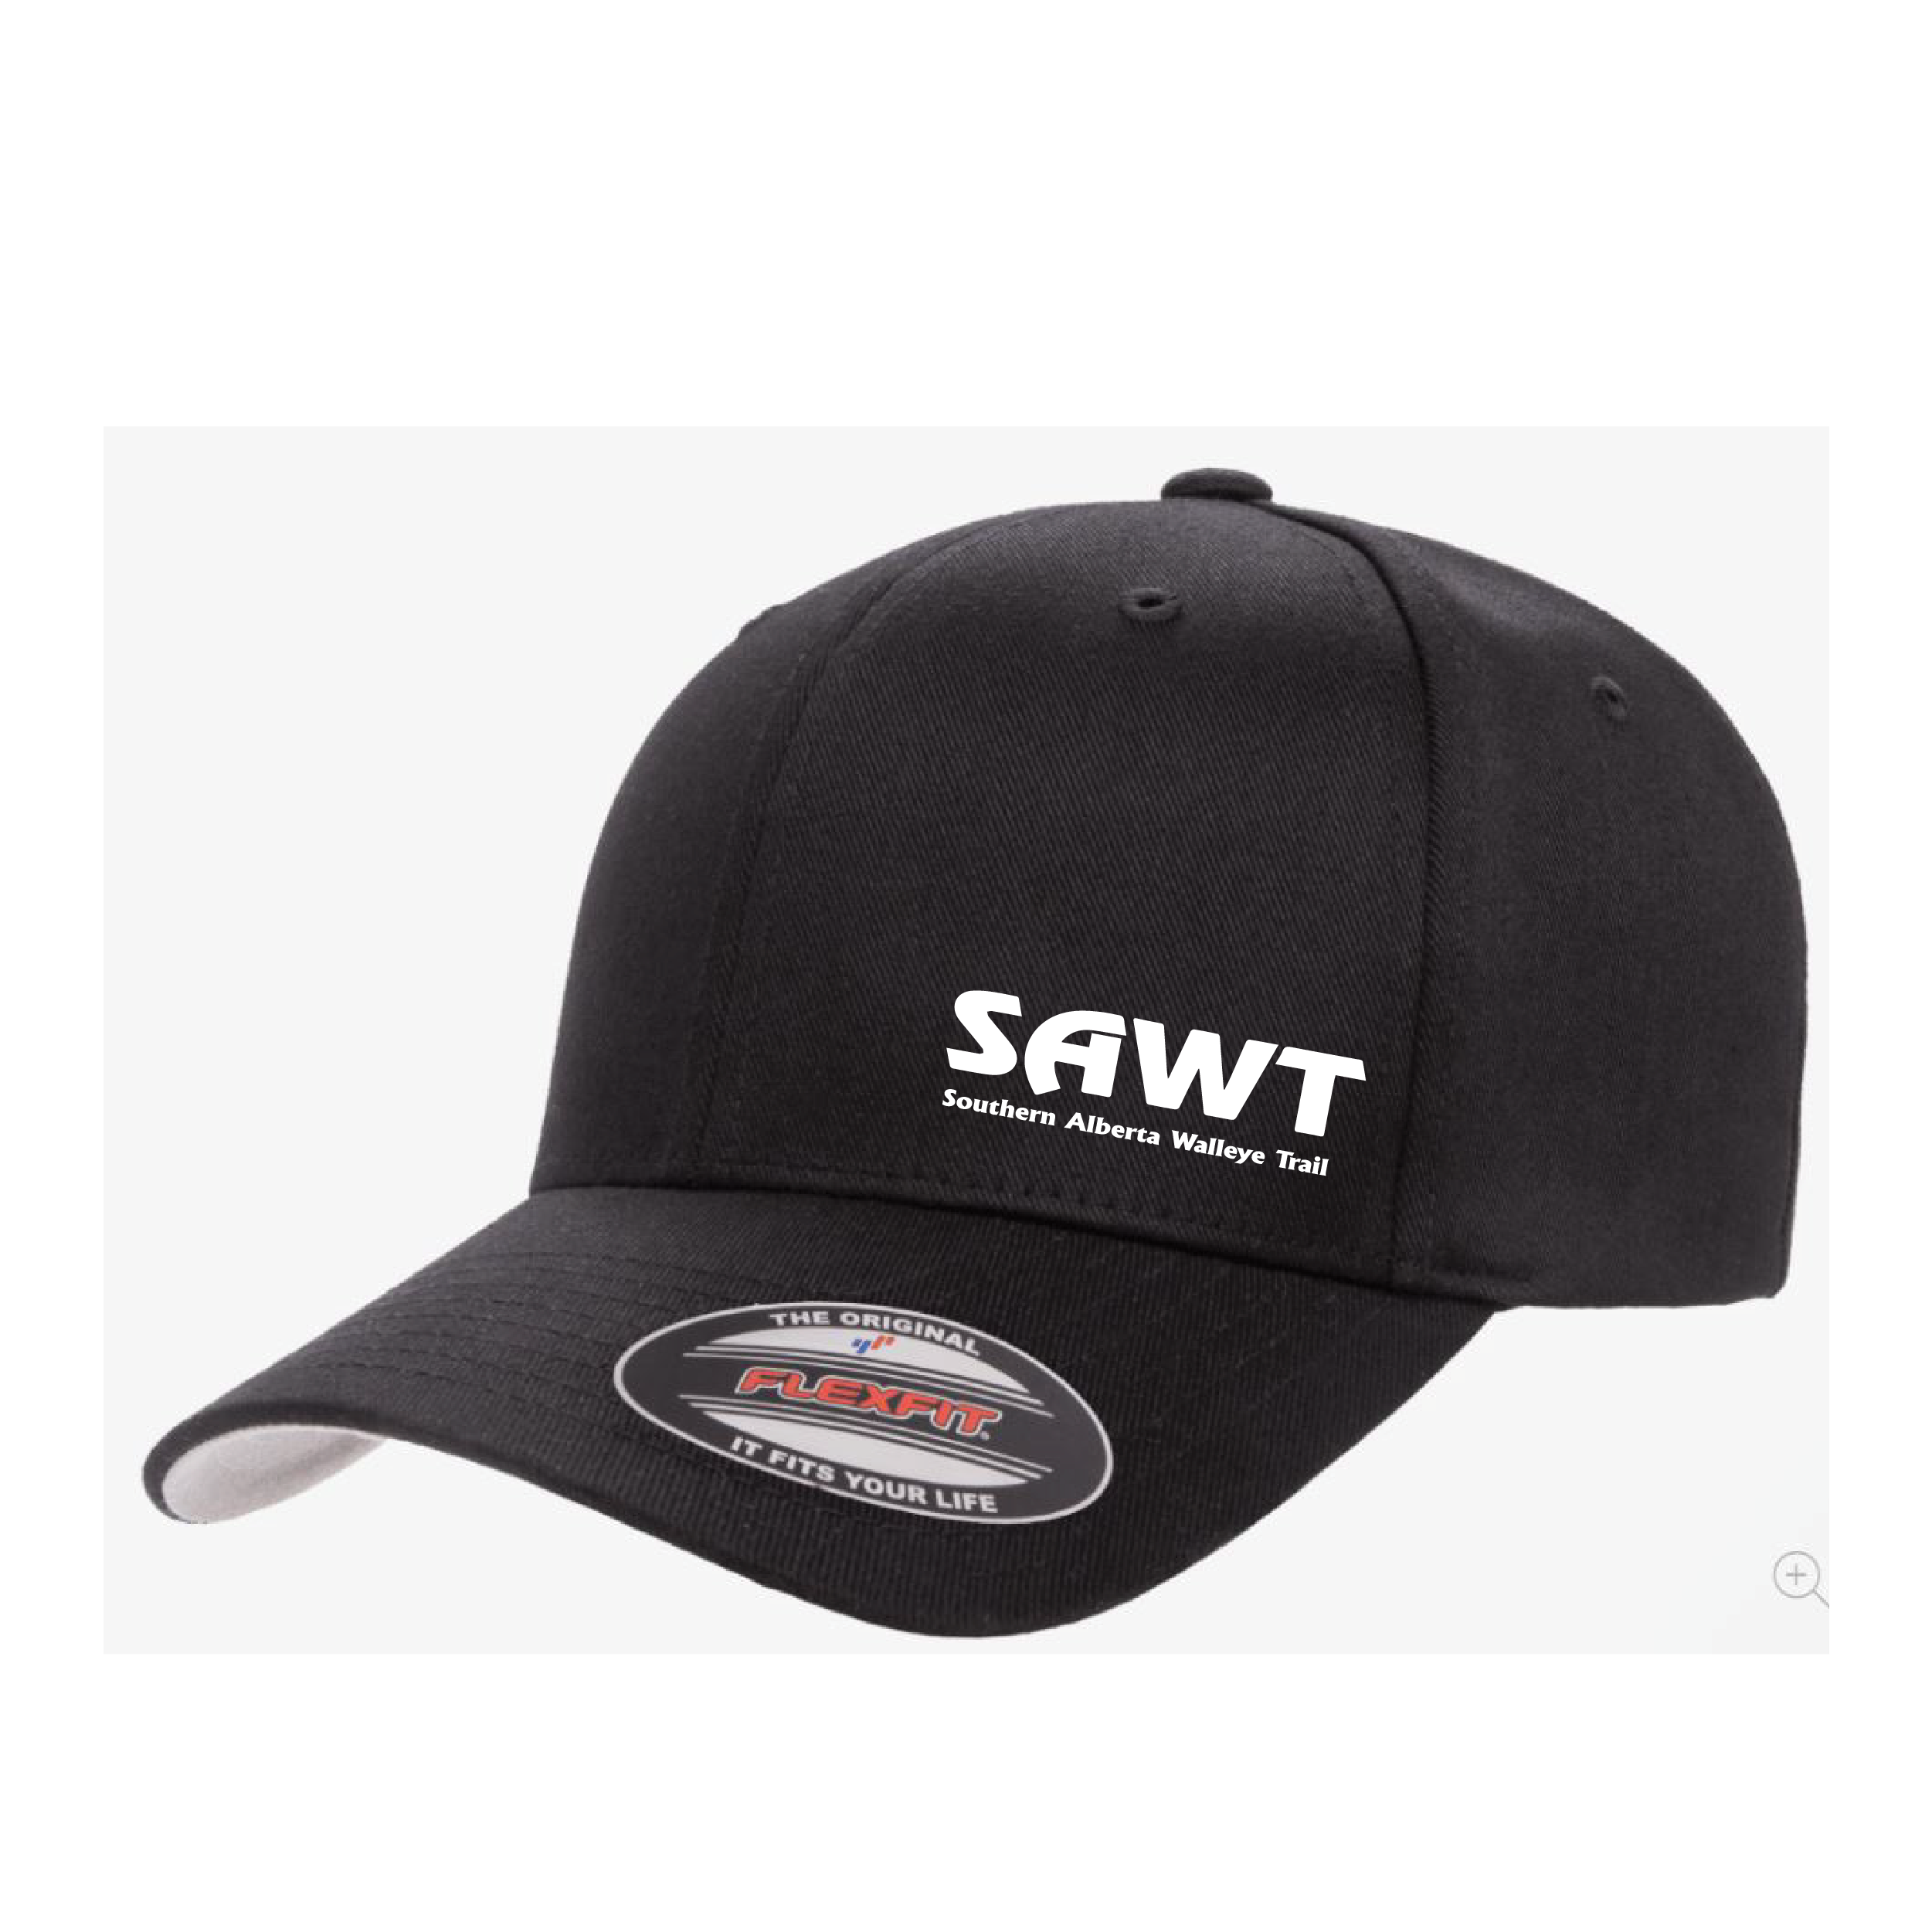 SA Shield Flex Fit Hat